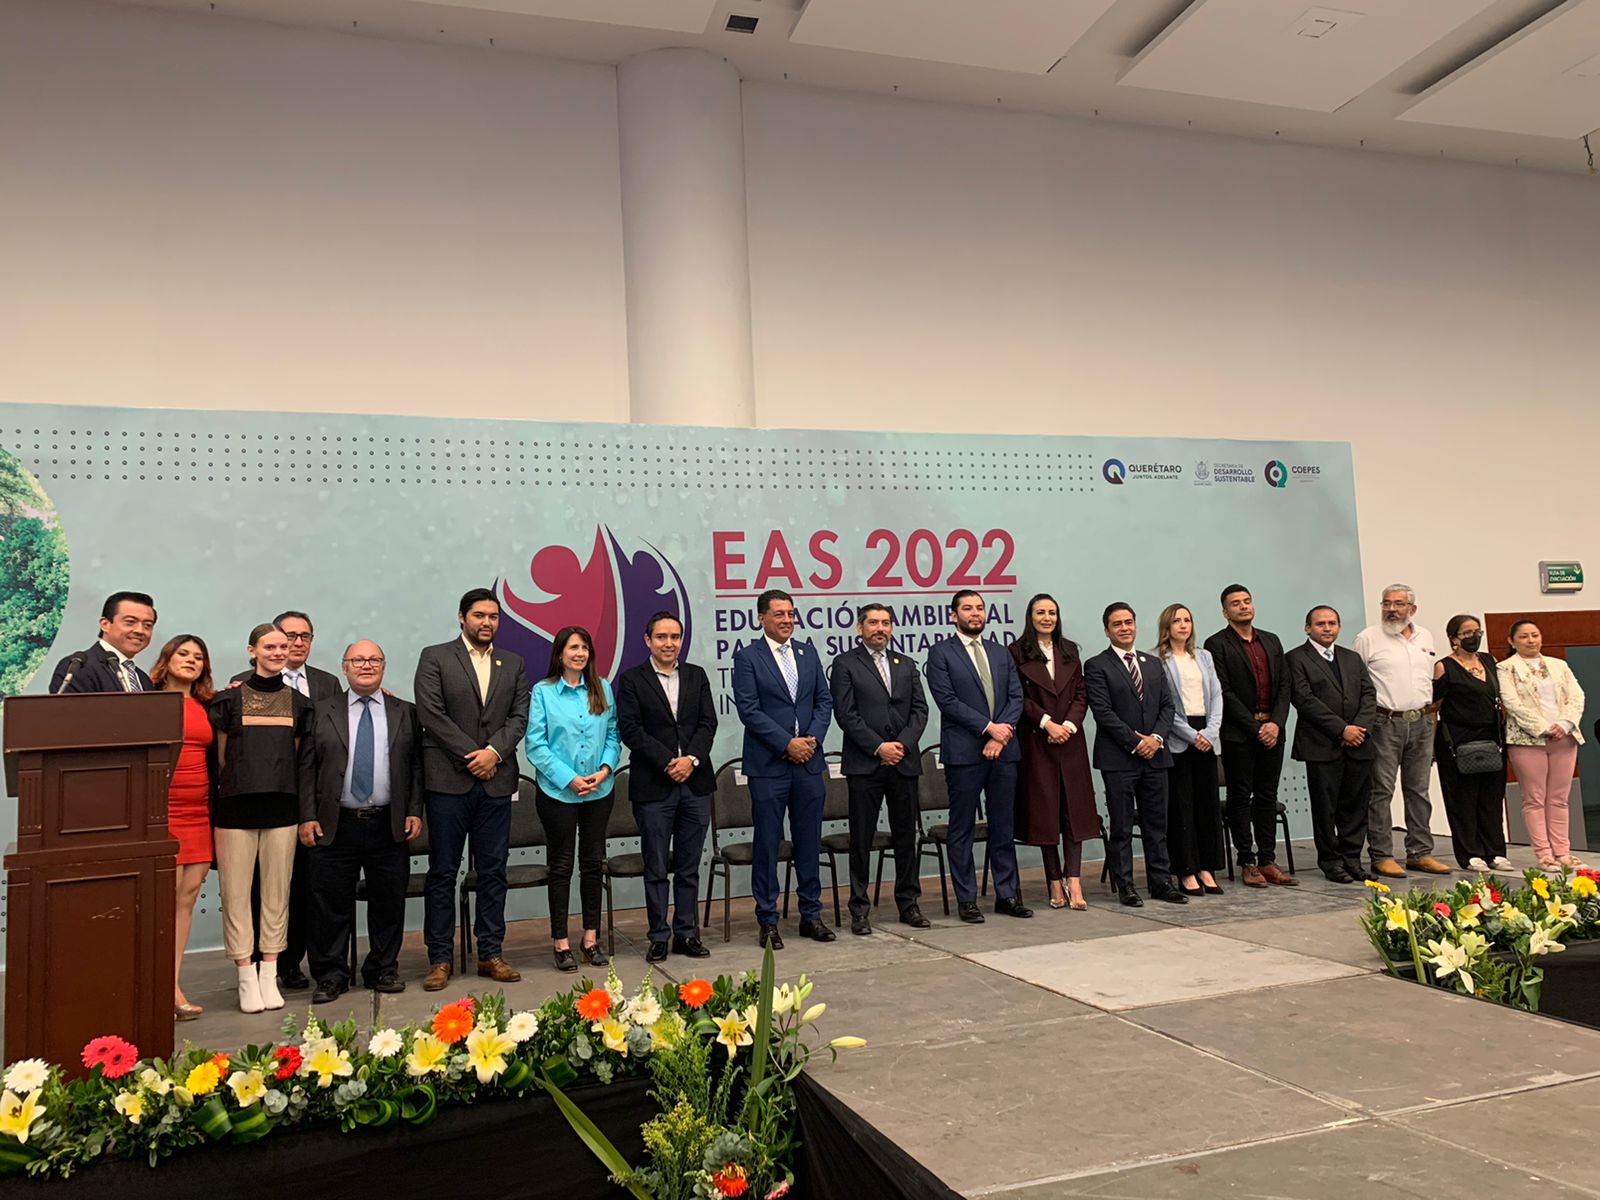 Realiza SEDESU 3era edición del congreso EAS